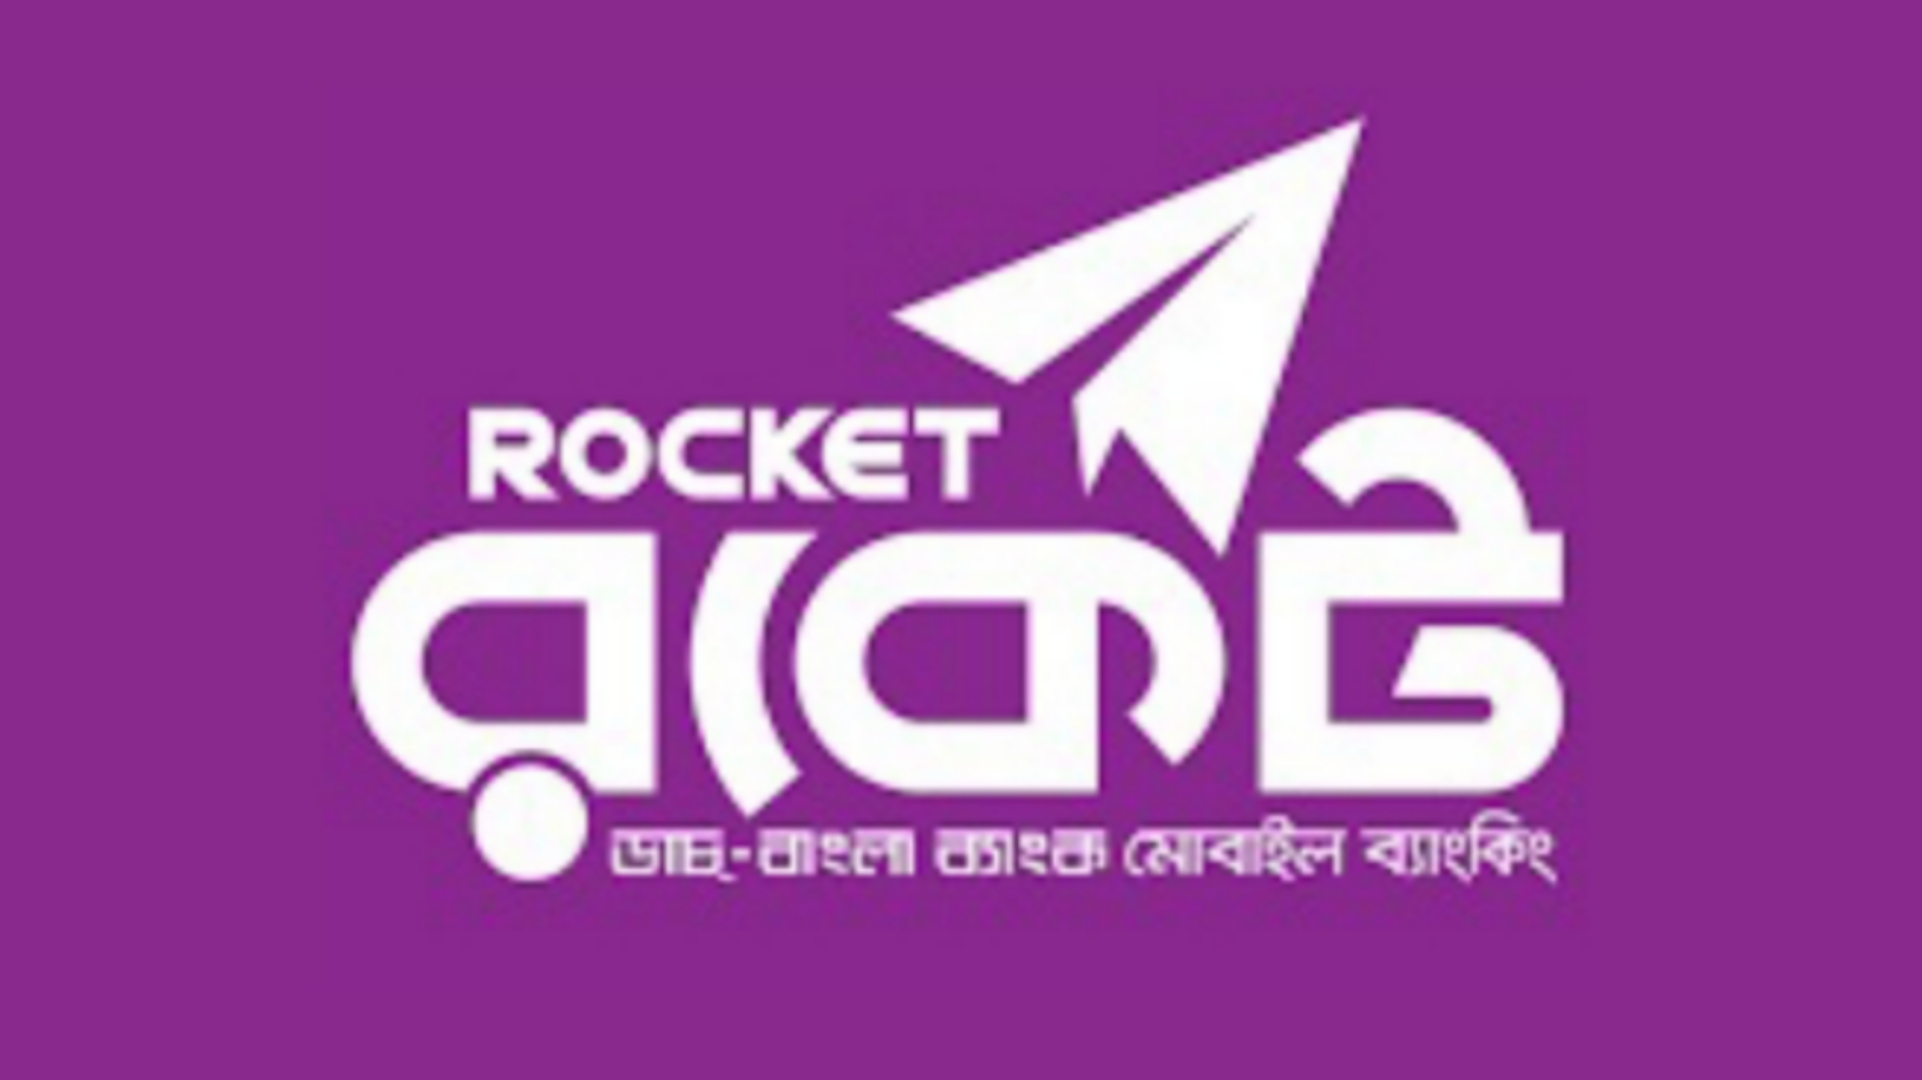 Rocket mobile recharge limit 